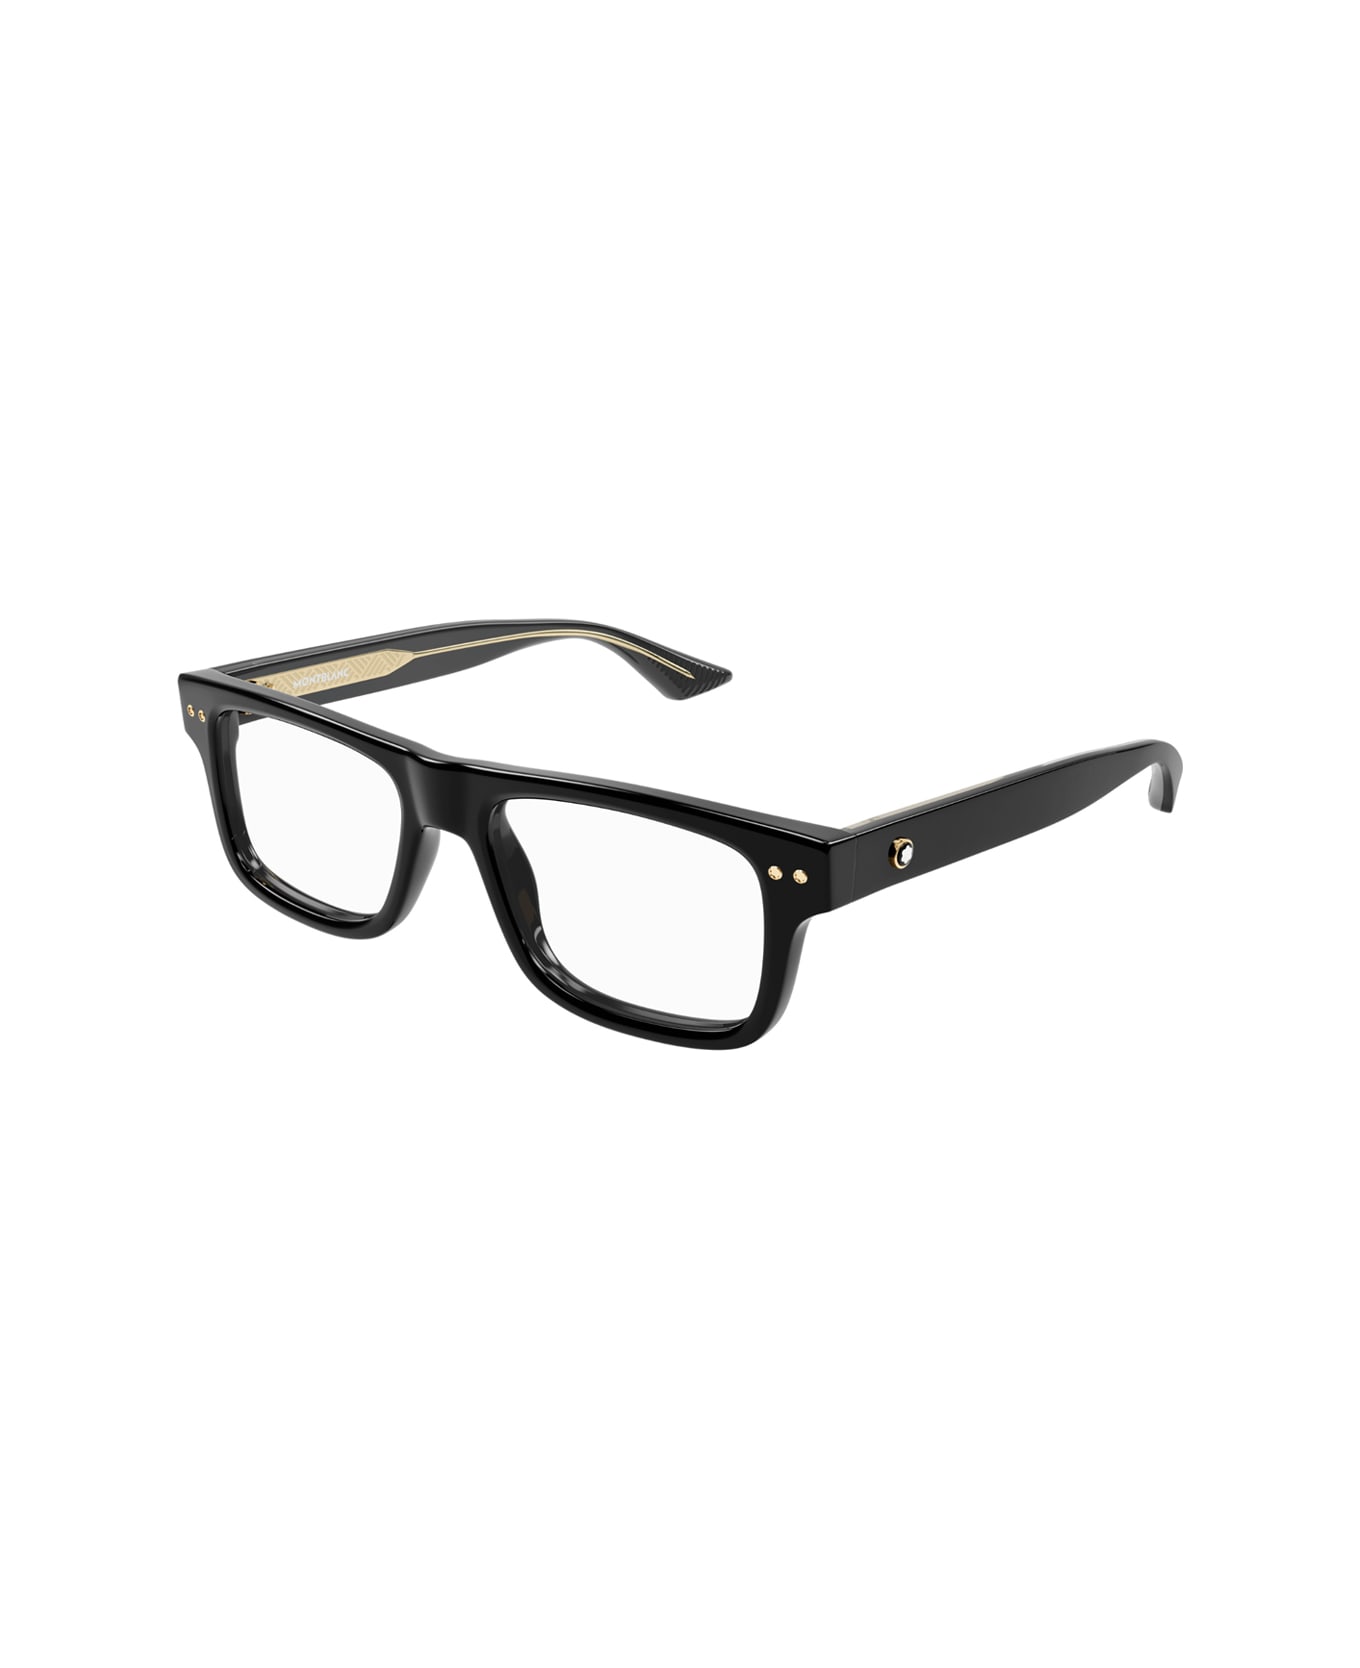 Montblanc Mb0289o 001 Glasses - Nero アイウェア